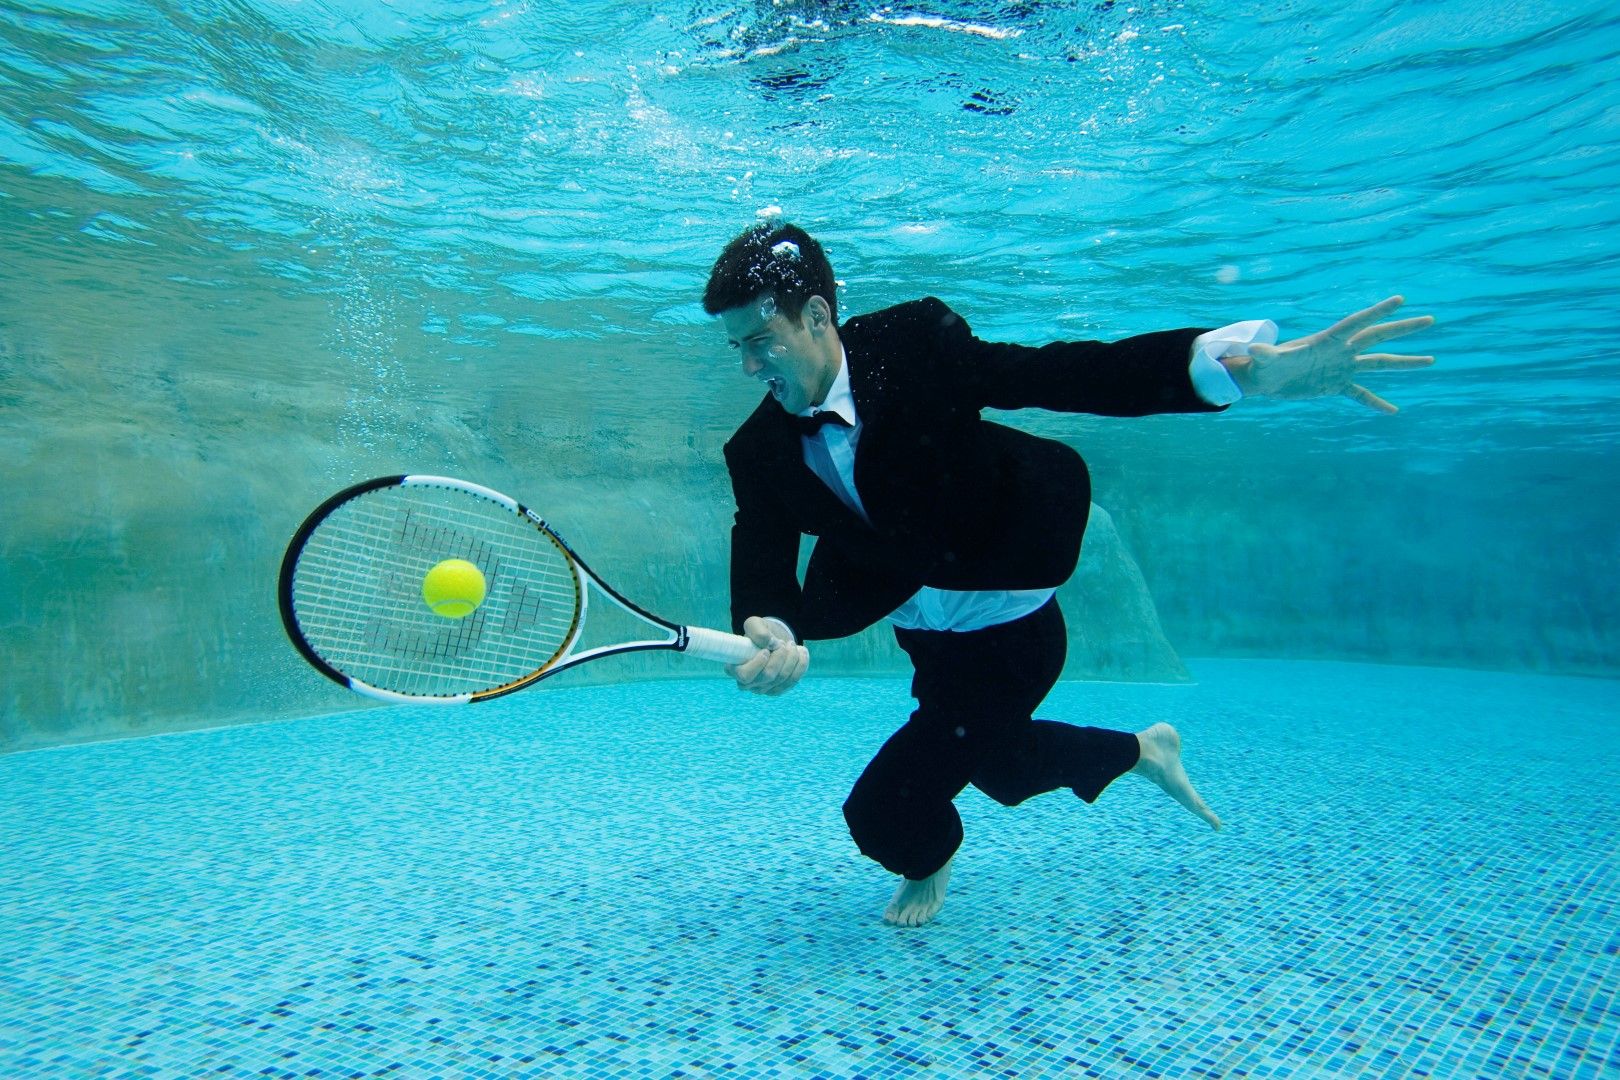 Може да играе тенис дори под вода.